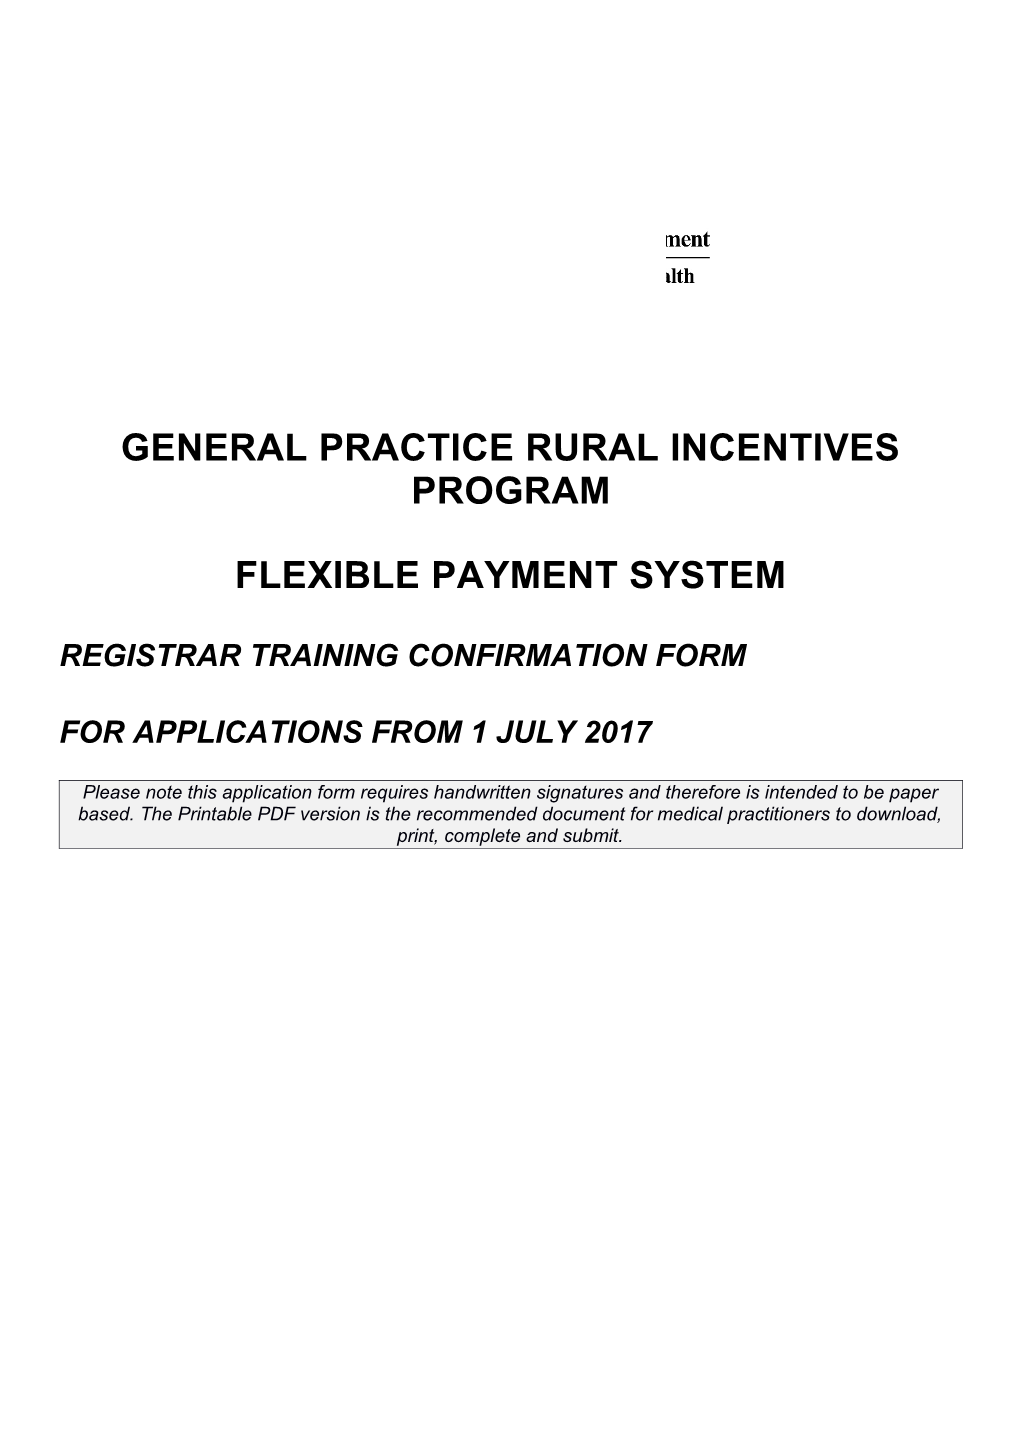 General Practice Rural Incentives Program